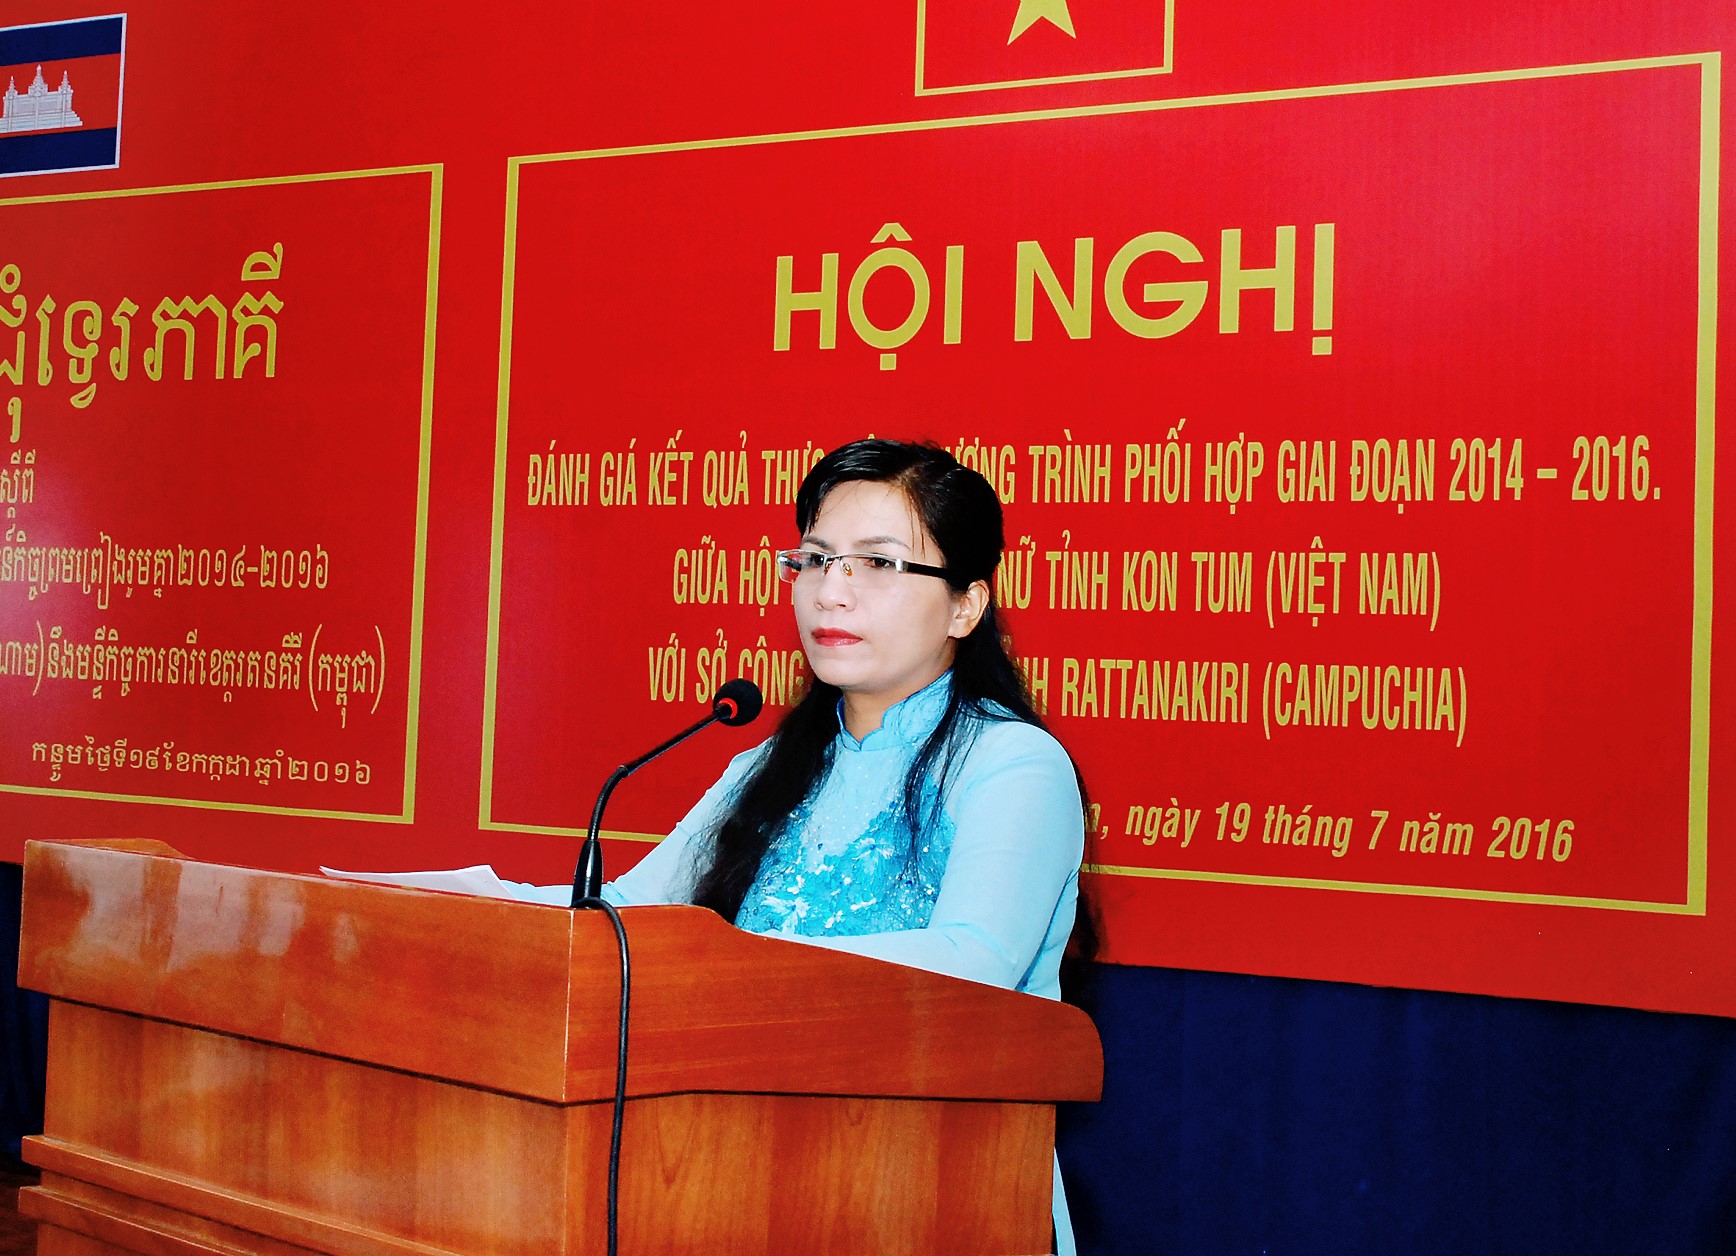 Đồng chí Nguyễn Thị Minh iên phát biểu tại Hội nghị đánh giá chương trình phối hợp giữa hội LHPN tỉnh với Hội phụ nữ Sê Kông, Attapư (CHDCND Lào), giai đoạn 2014-2016